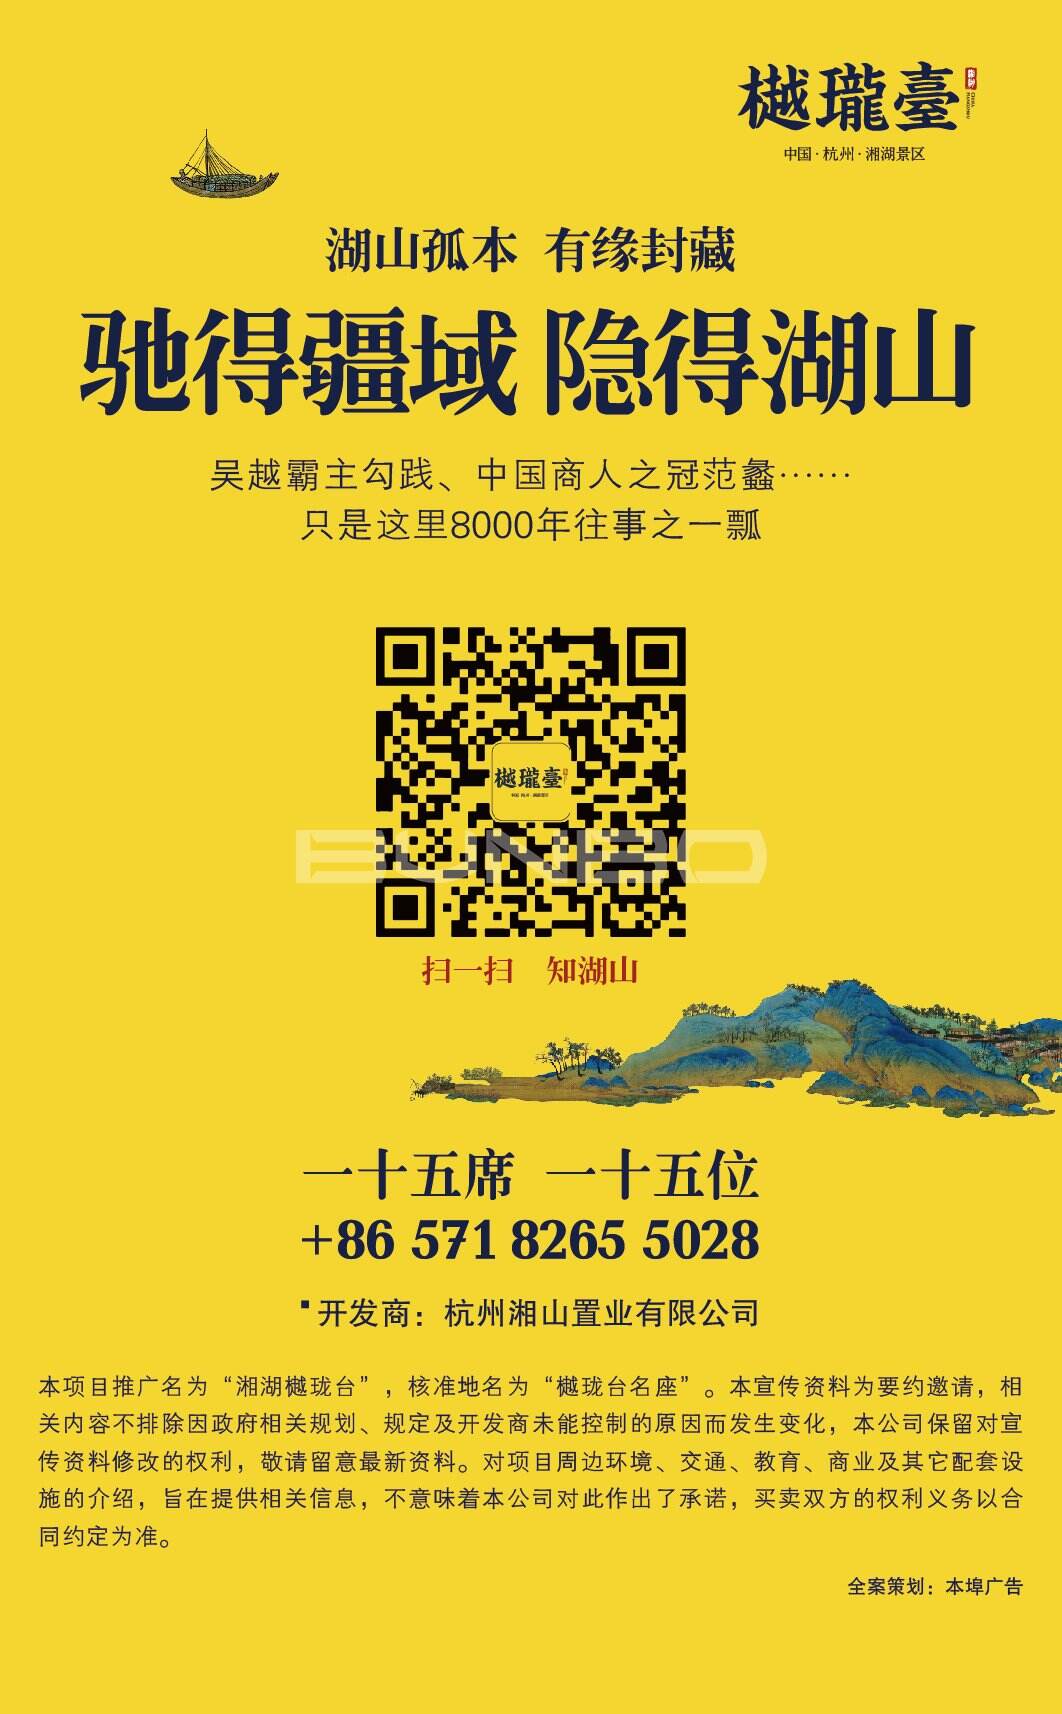 尾版：杭州顶级豪宅樾珑台，本埠广告微信作品